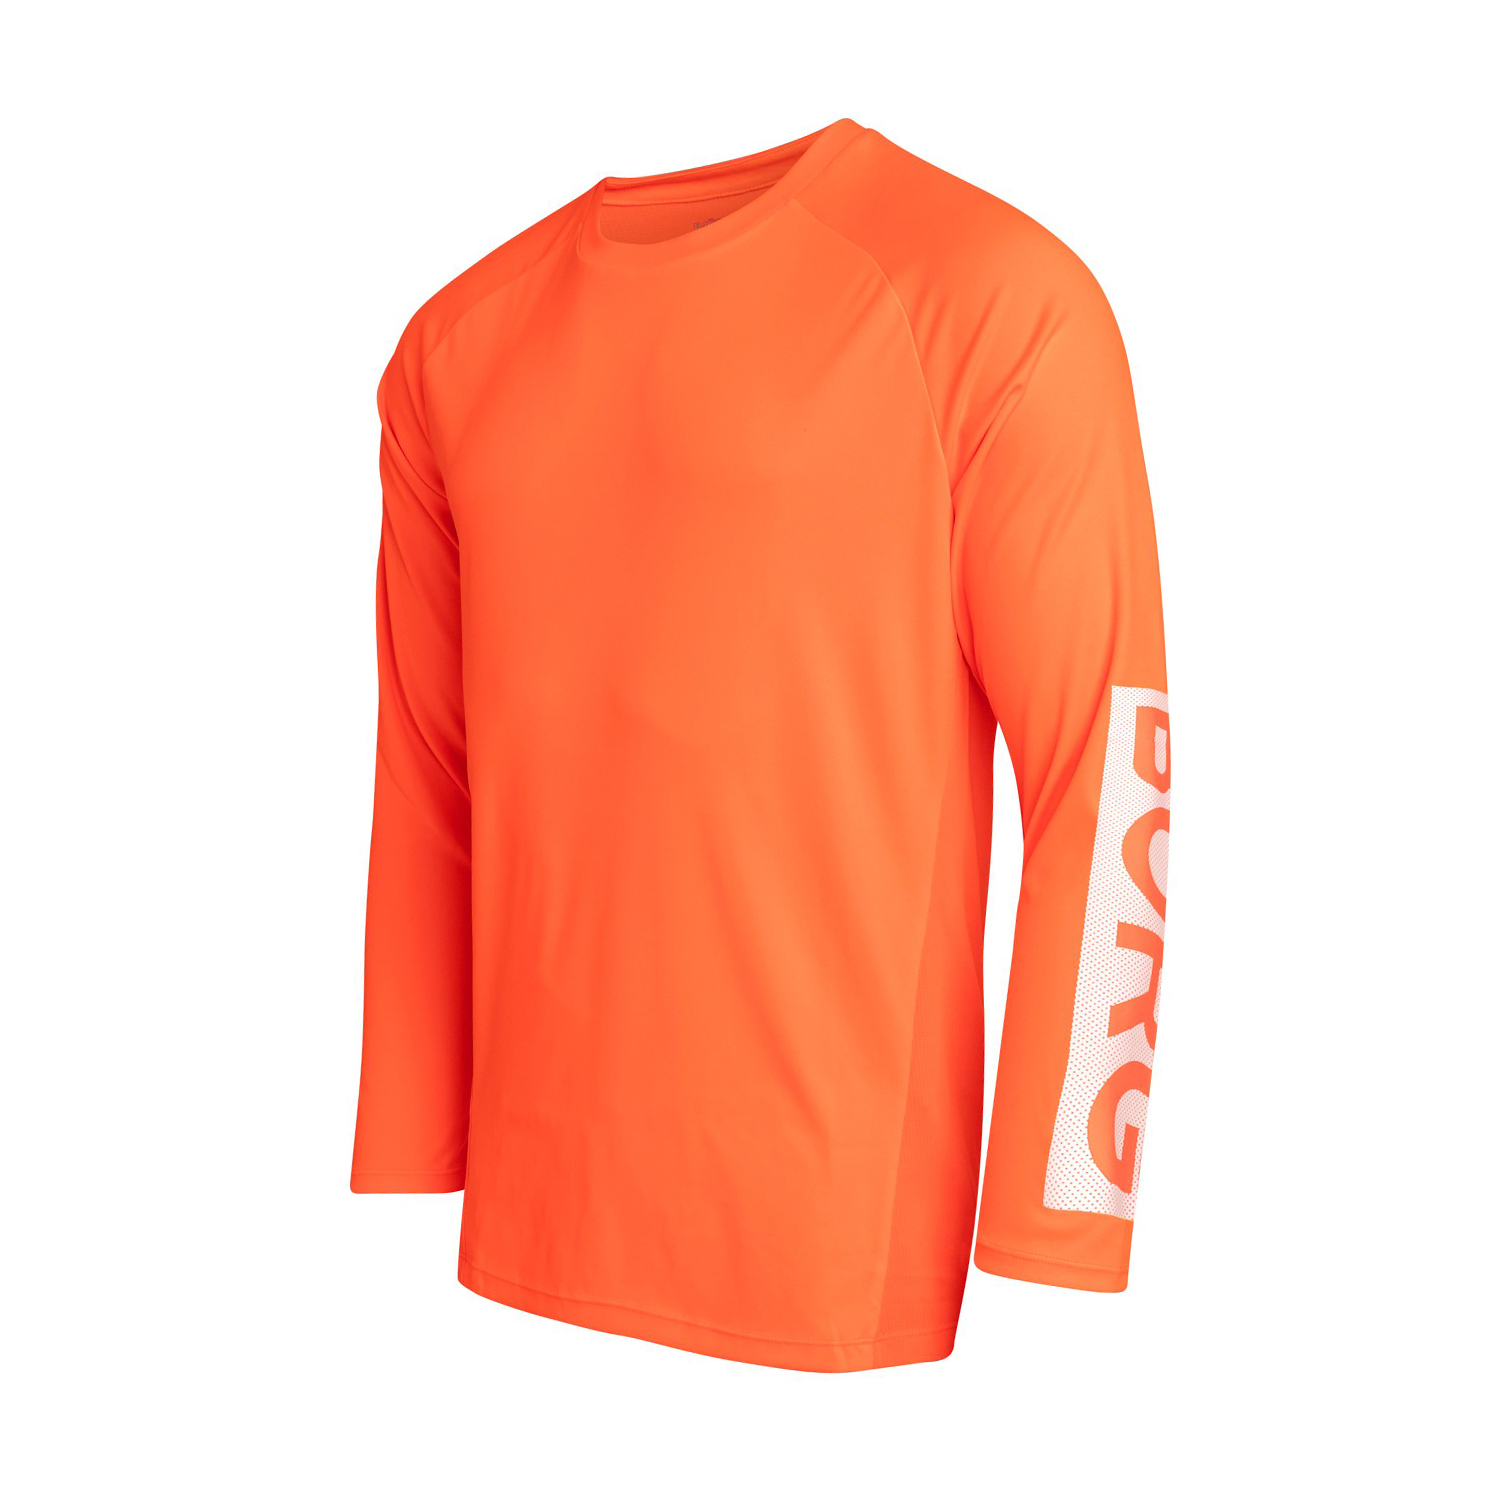 Ανδρικά/Ρούχα/Αθλητικά/Φούτερ-Μακρυμάνικα BJORN BORG - Ανδρική αθλητική μπλούζα BJORN BORG πορτοκαλί